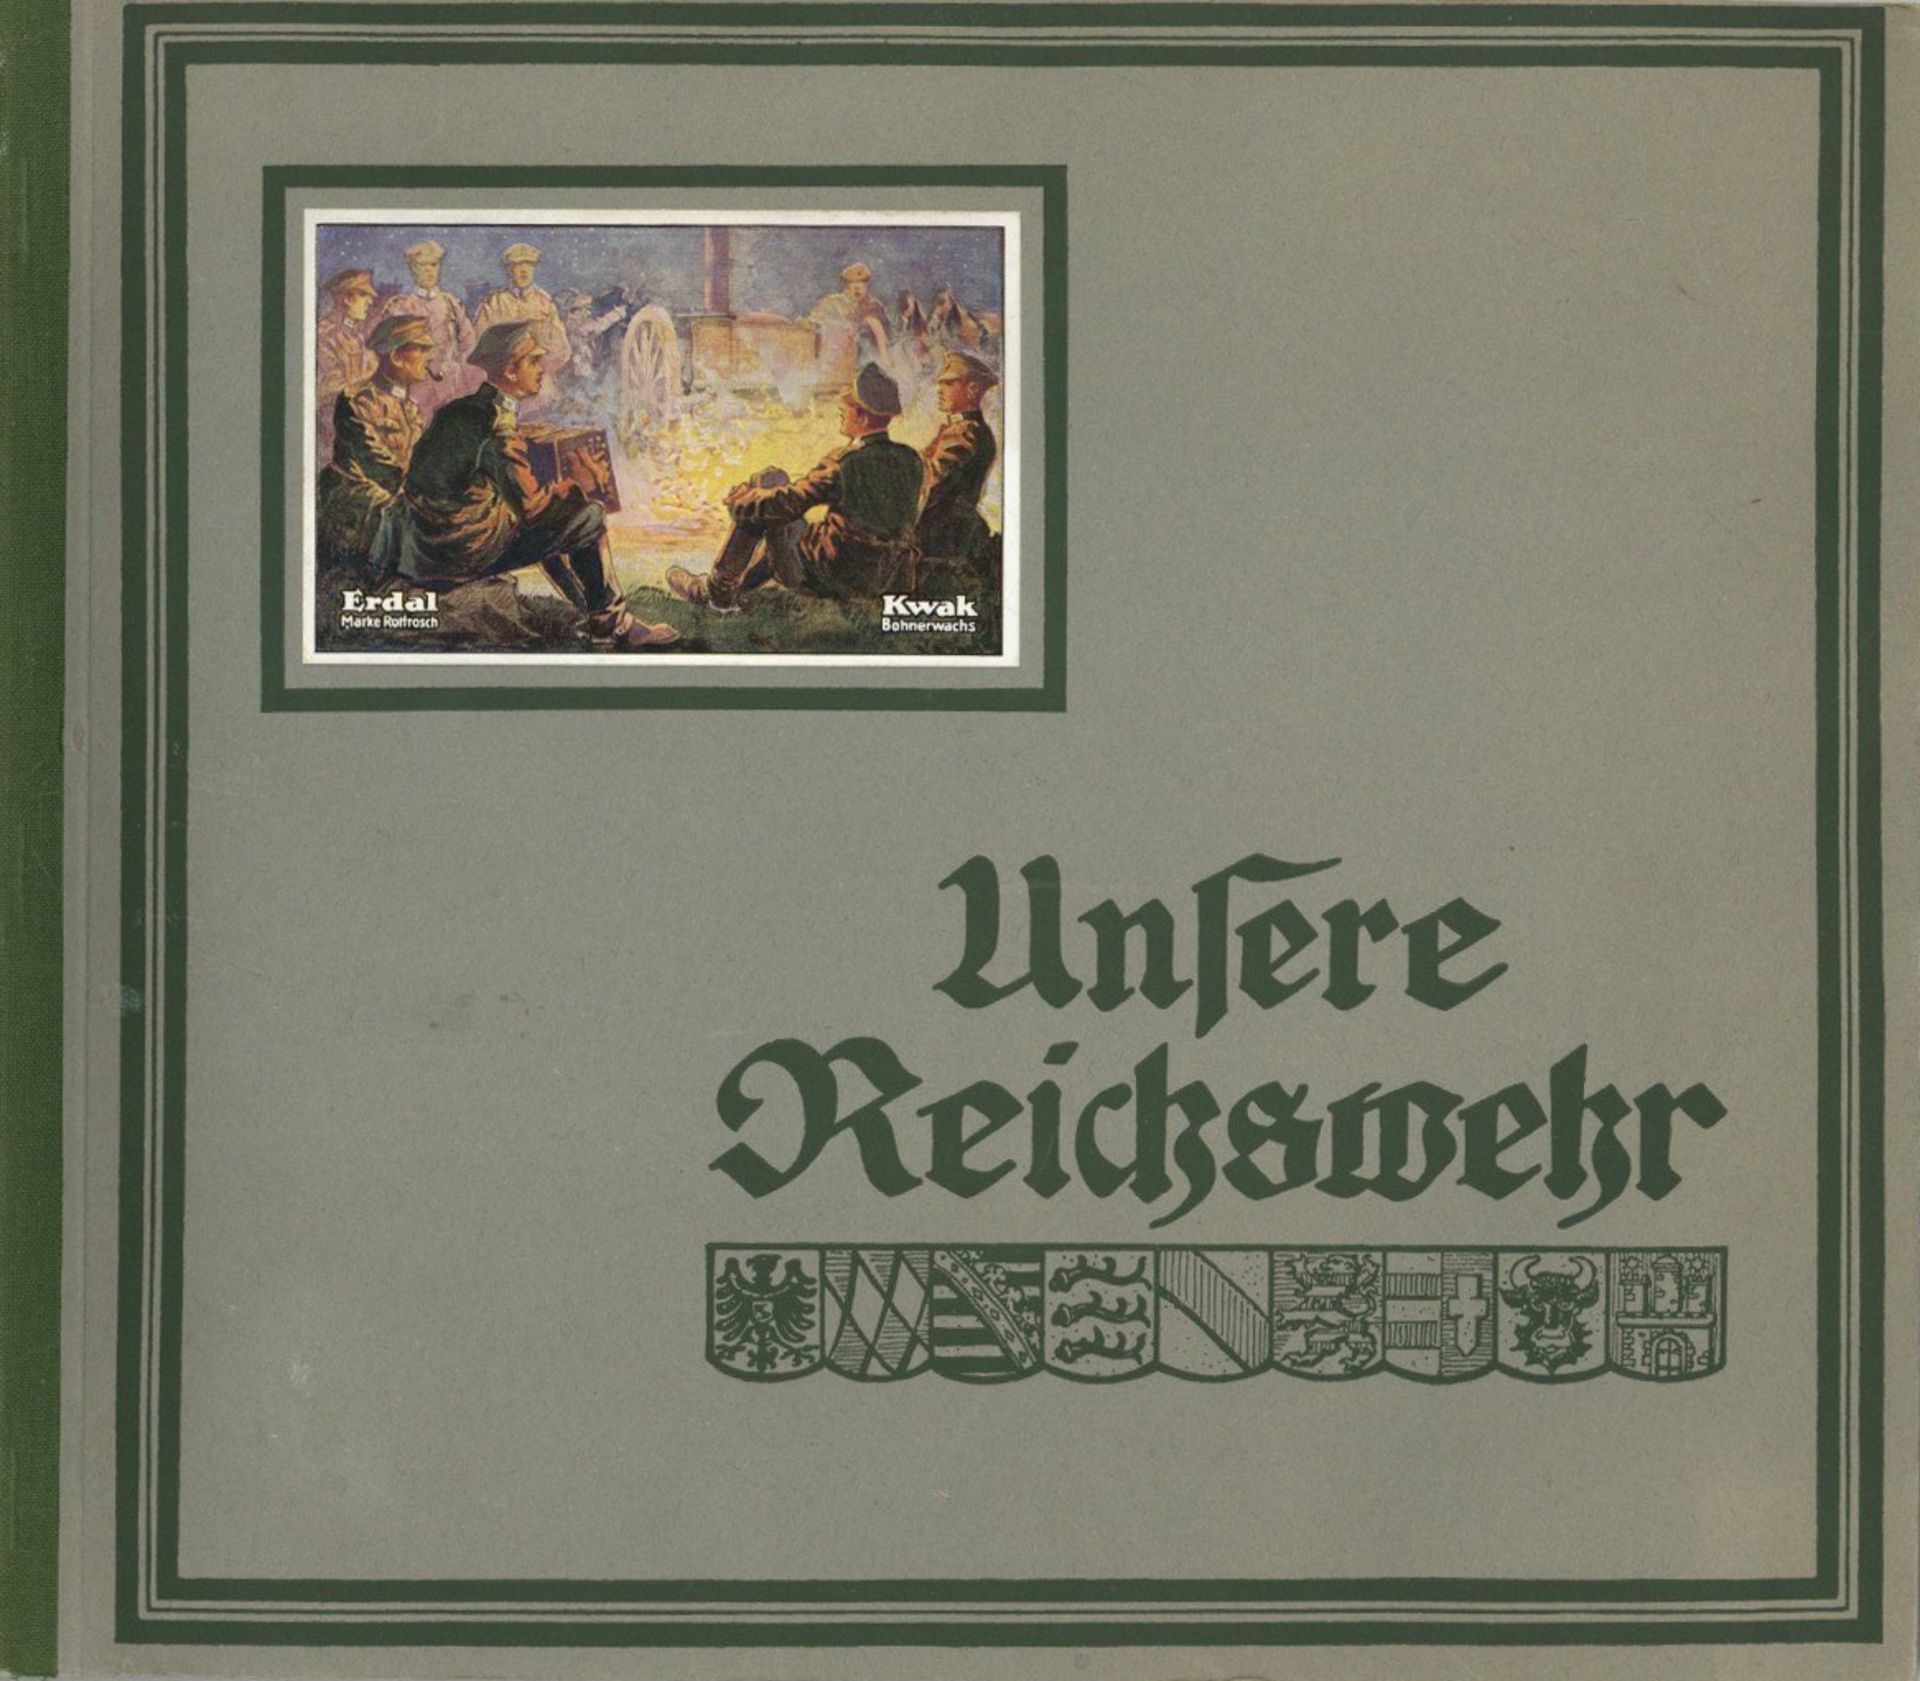 Sammelbild-Album Unsere Reichswehr Hrsg. Werner u. Mertz A.G. Erdalfabrik Mainz 17 S. 42 Bilder